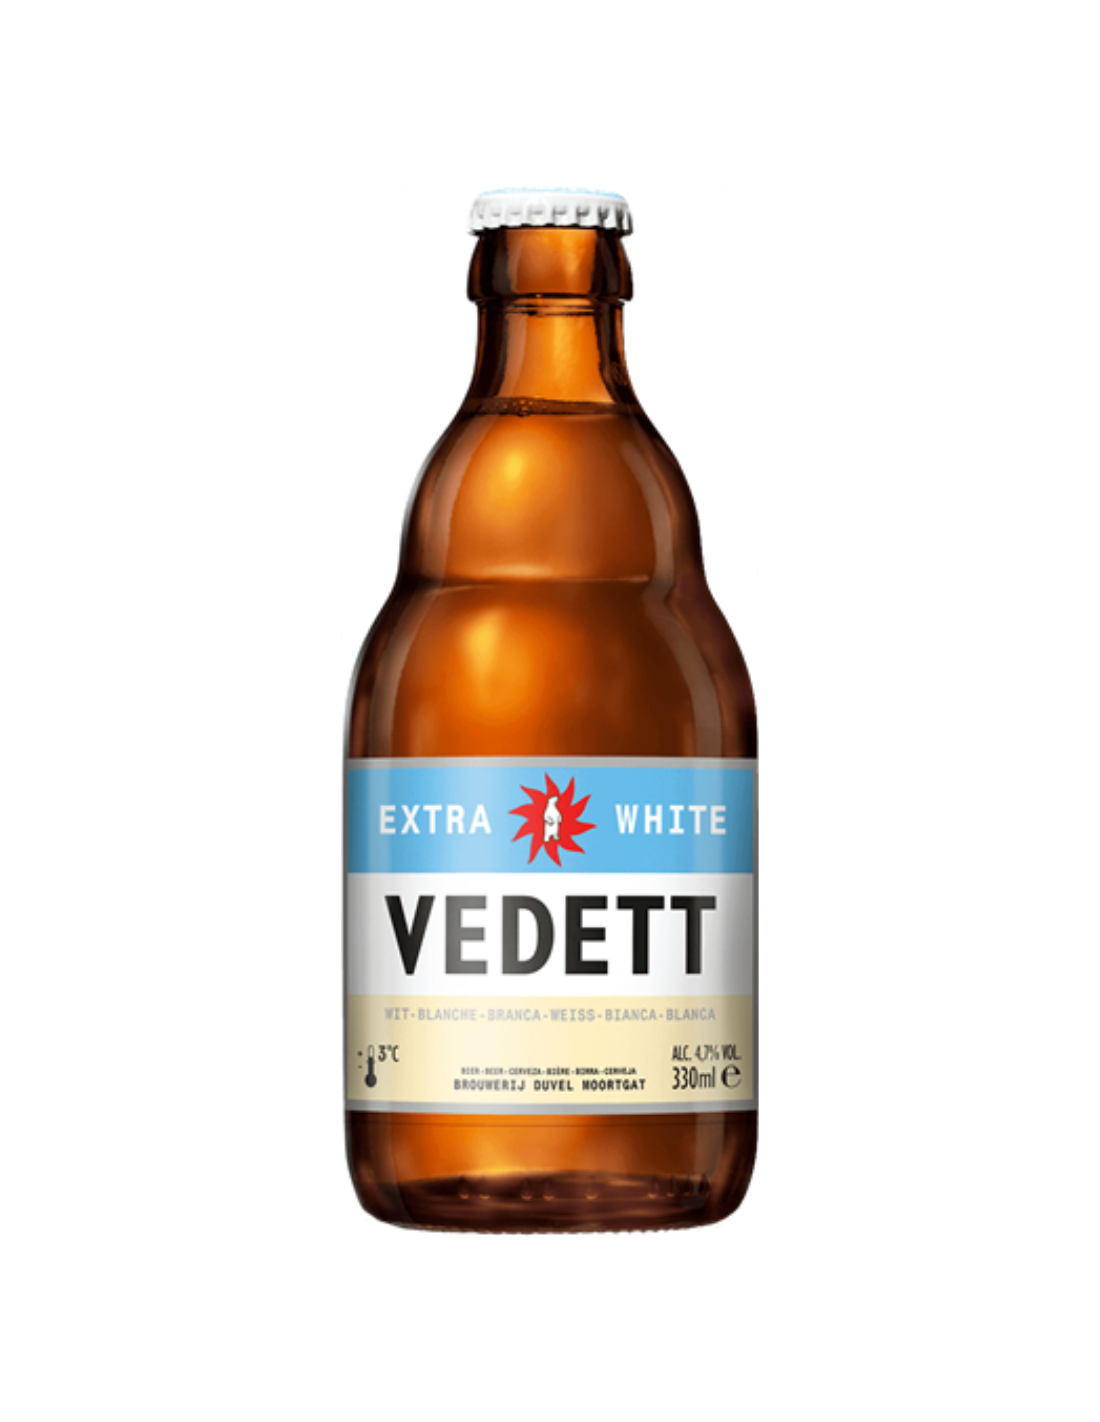 Bere alba Vedett Extra White, 4.7% alc., 0.33L, sticla, Belgia alcooldiscount.ro